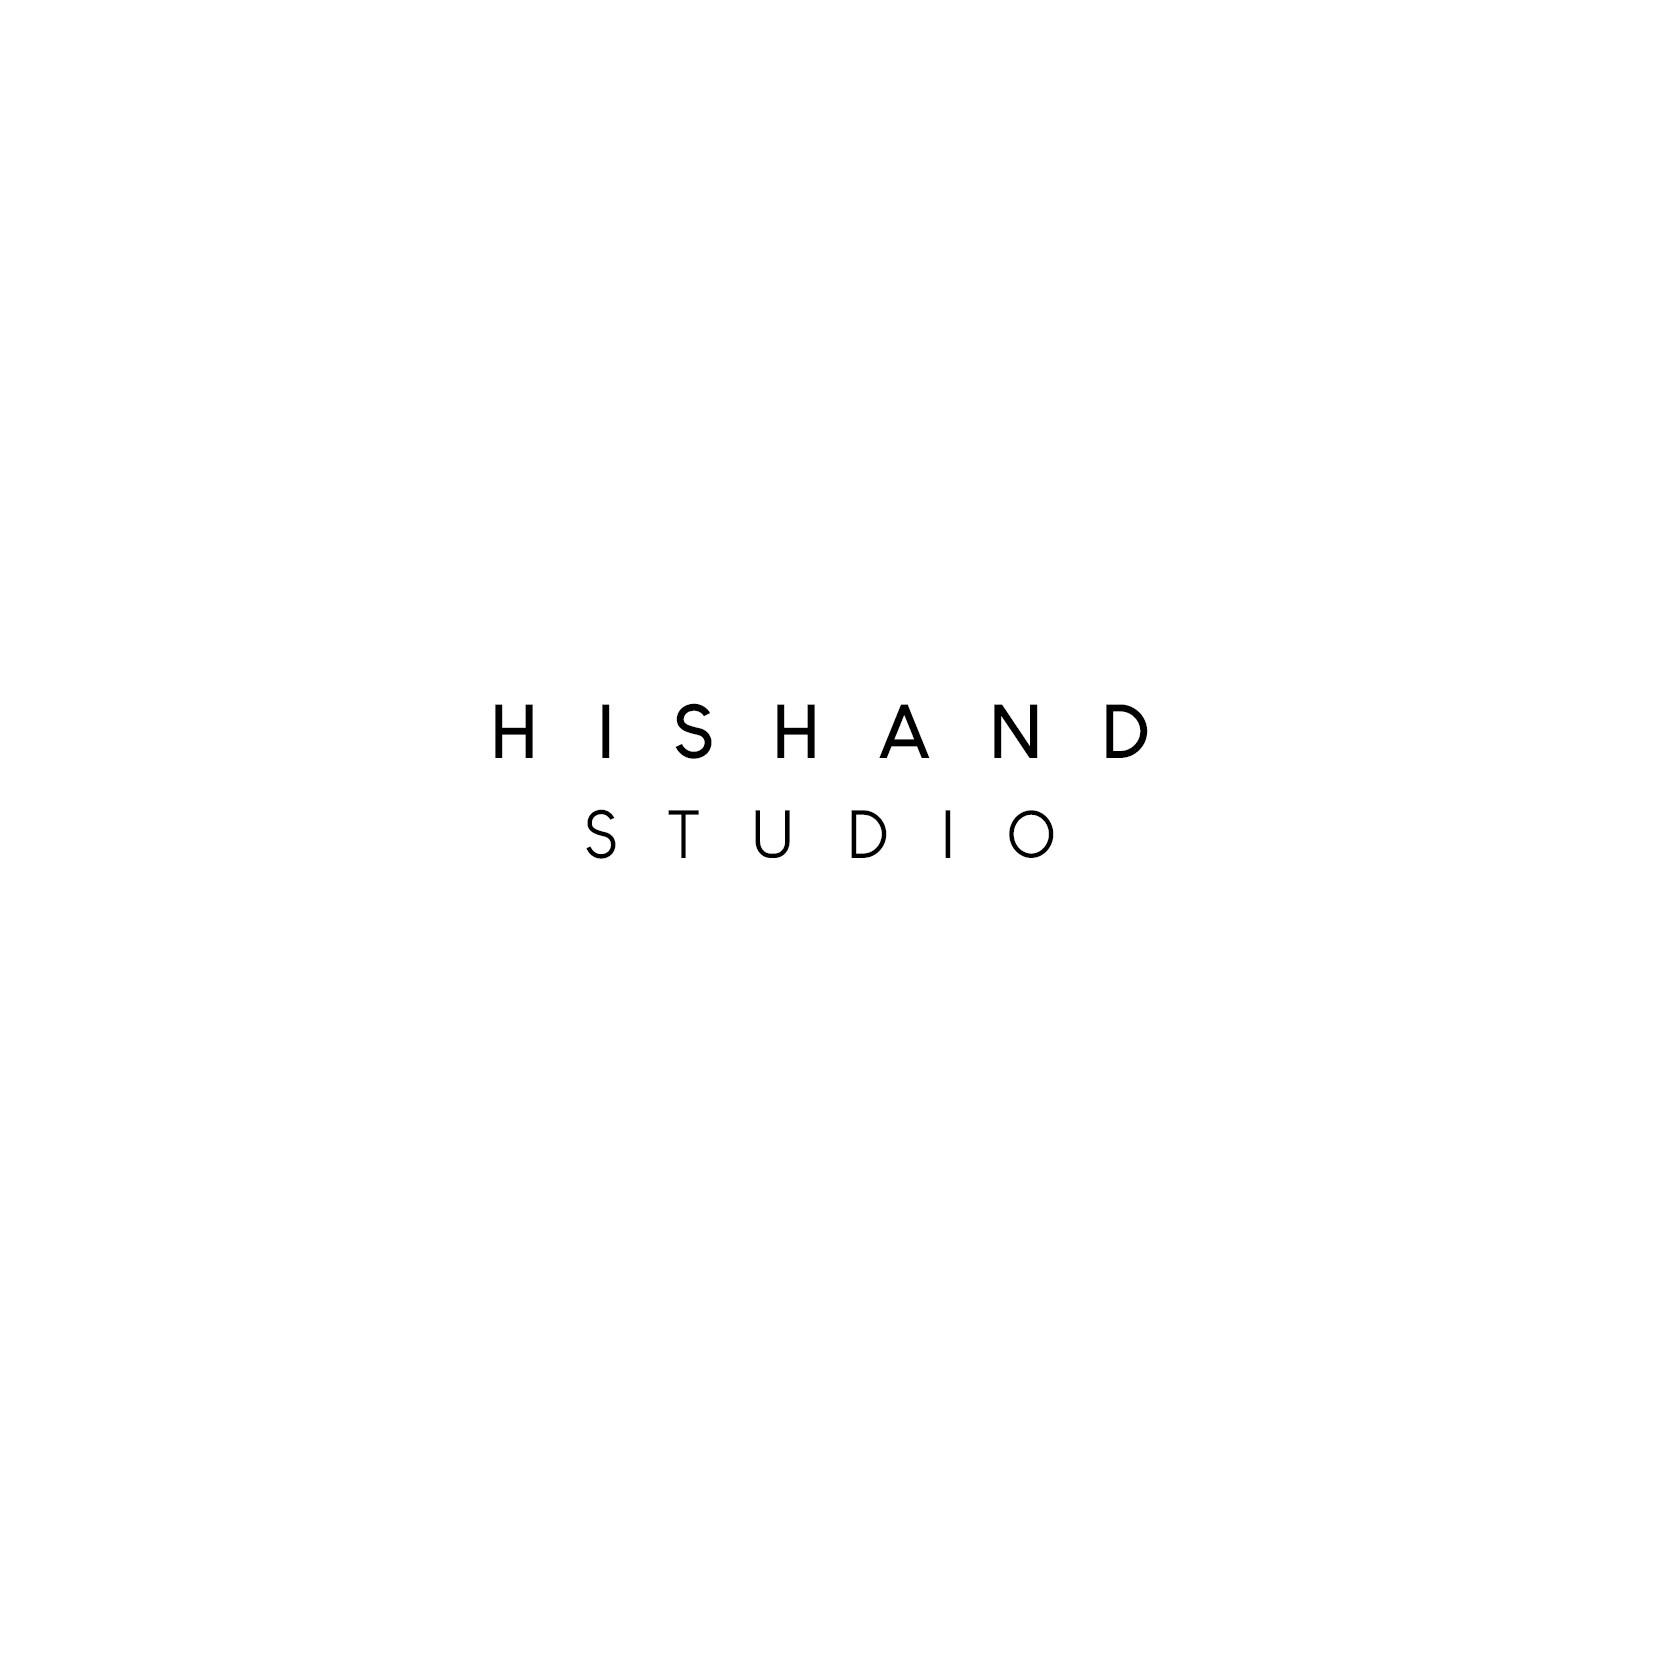 Hishand studio